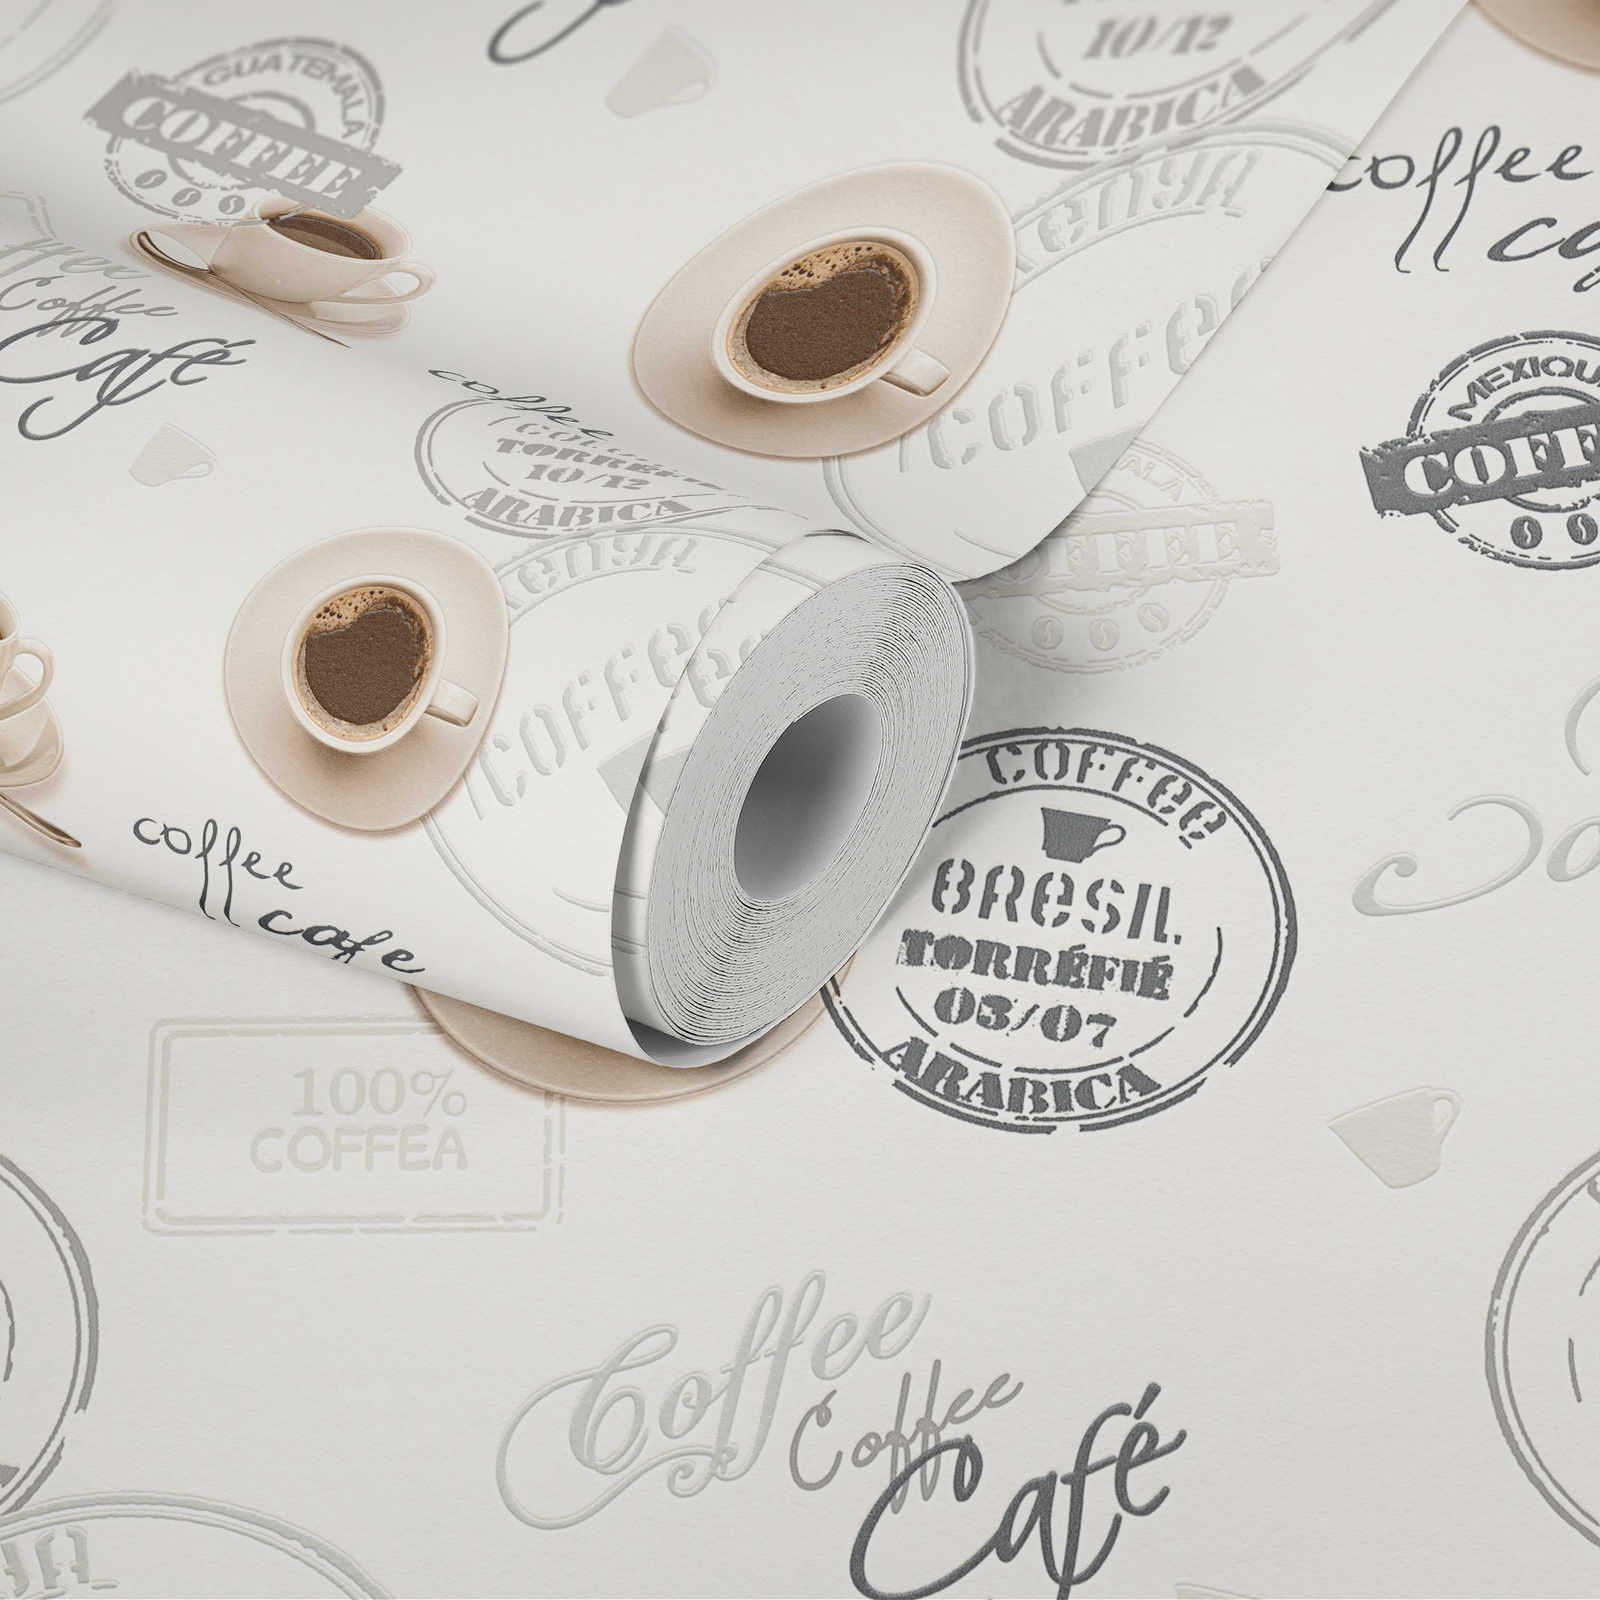             Koffiebehang voor keukens, retro design - crème, beige
        